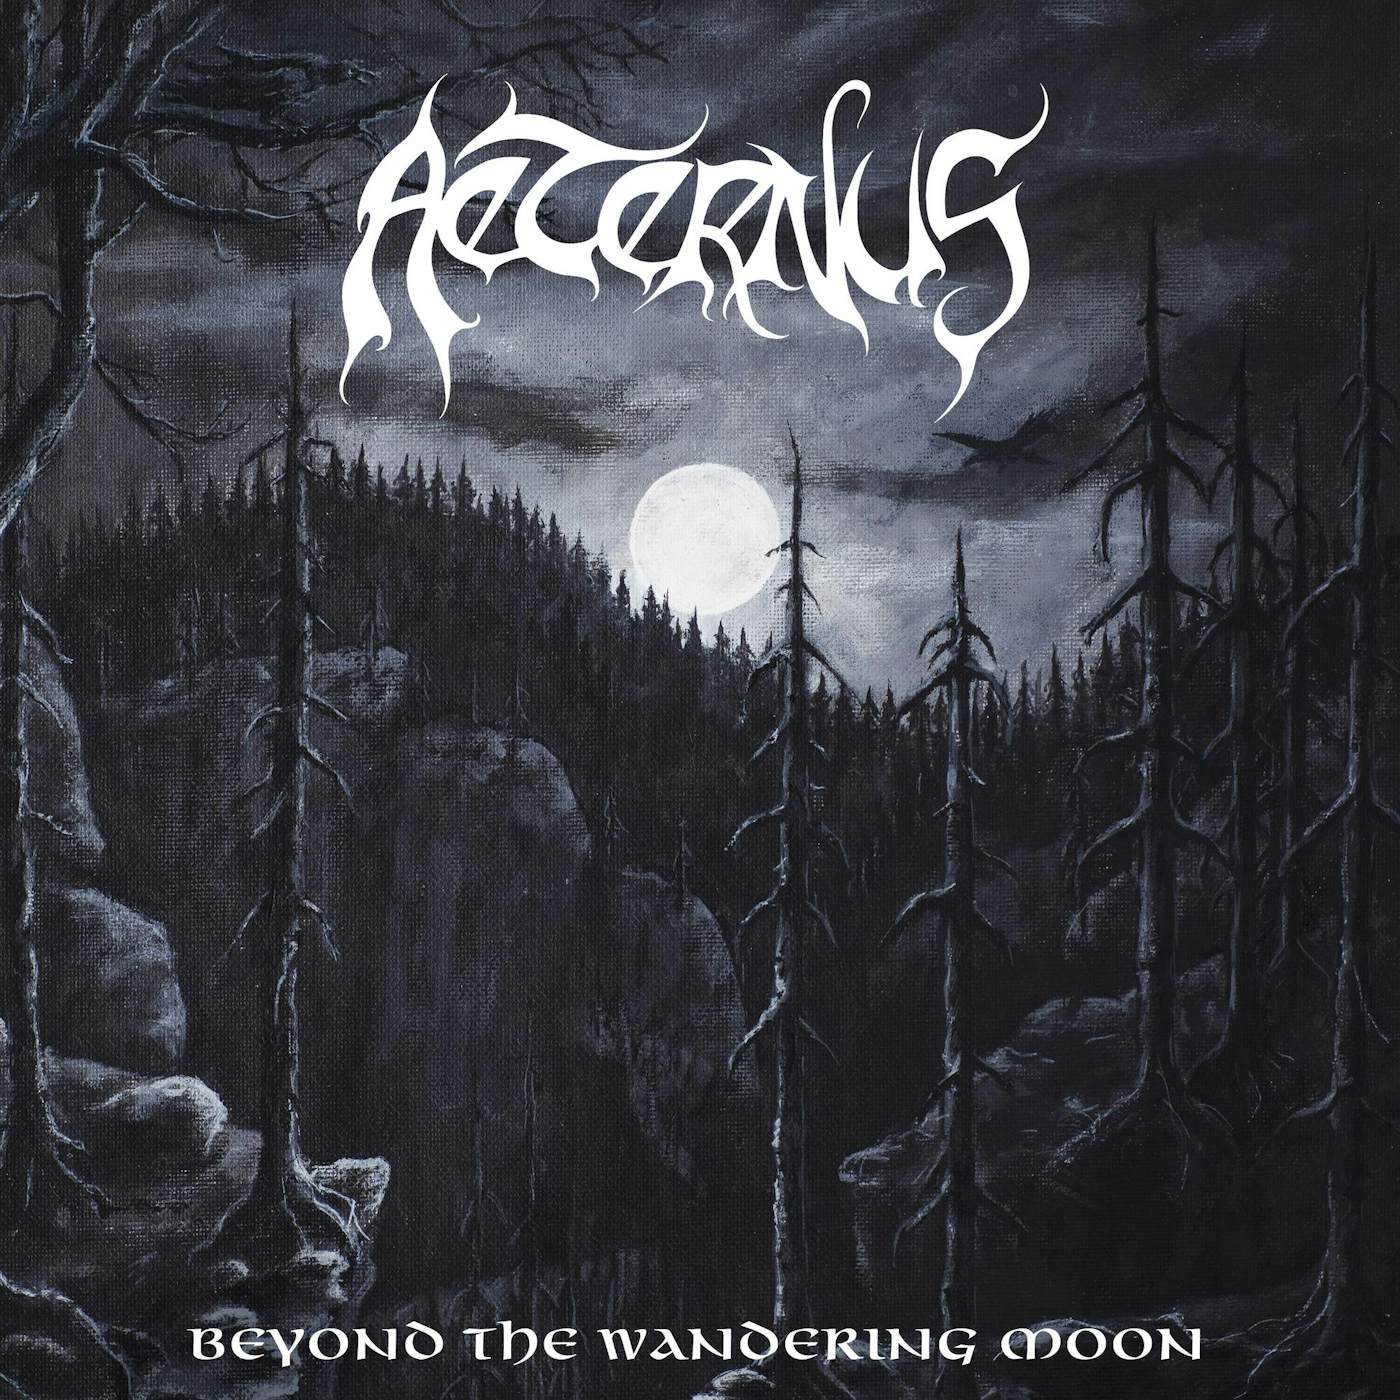 Aeternus Beyond The Wandering Moon Vinyl Record